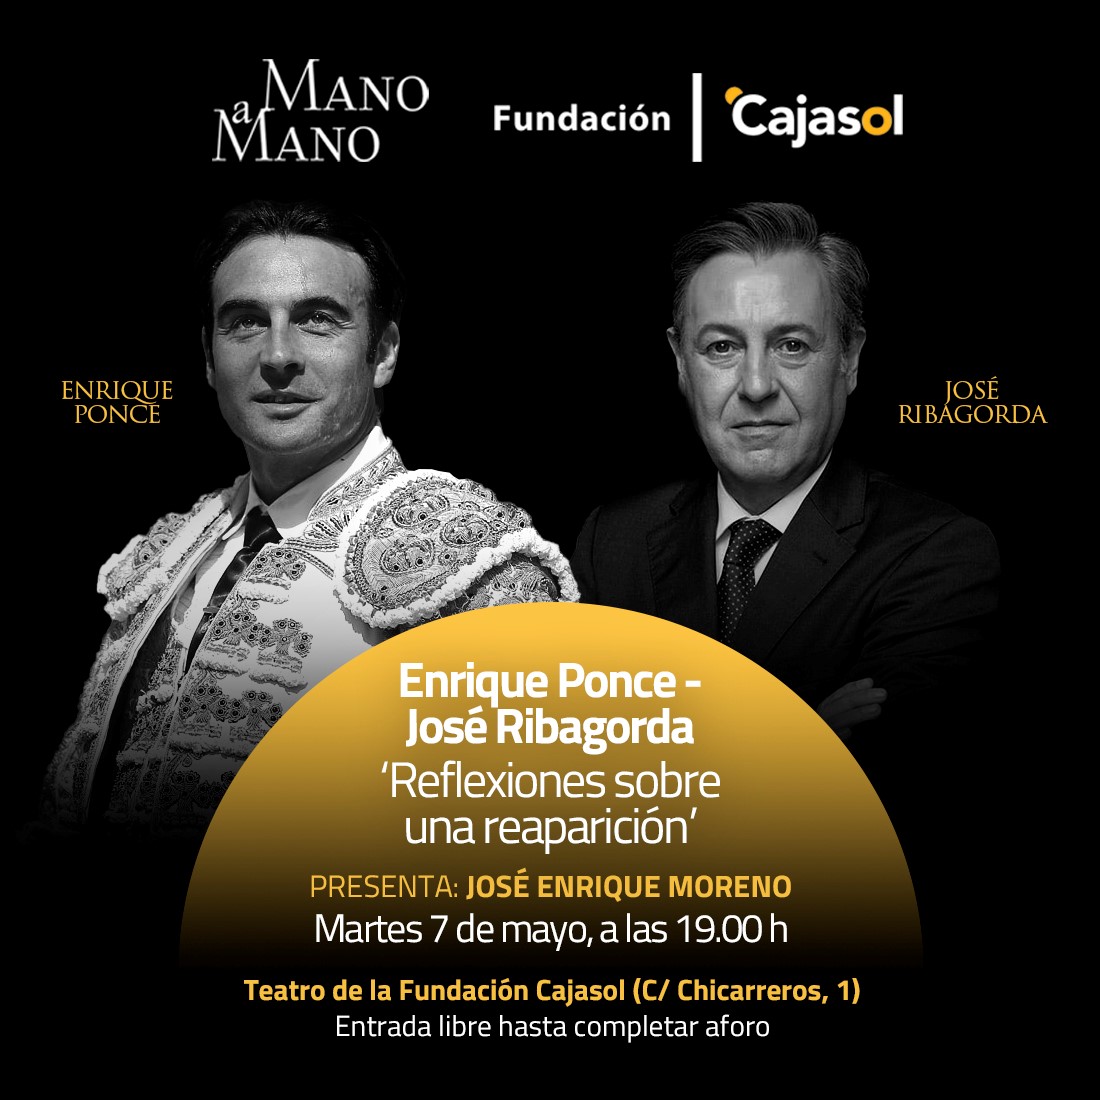 Enrique Ponce y José Ribagorda, en los mano a mano de Cajasol sevillatoro.es/enrique-ponce-…